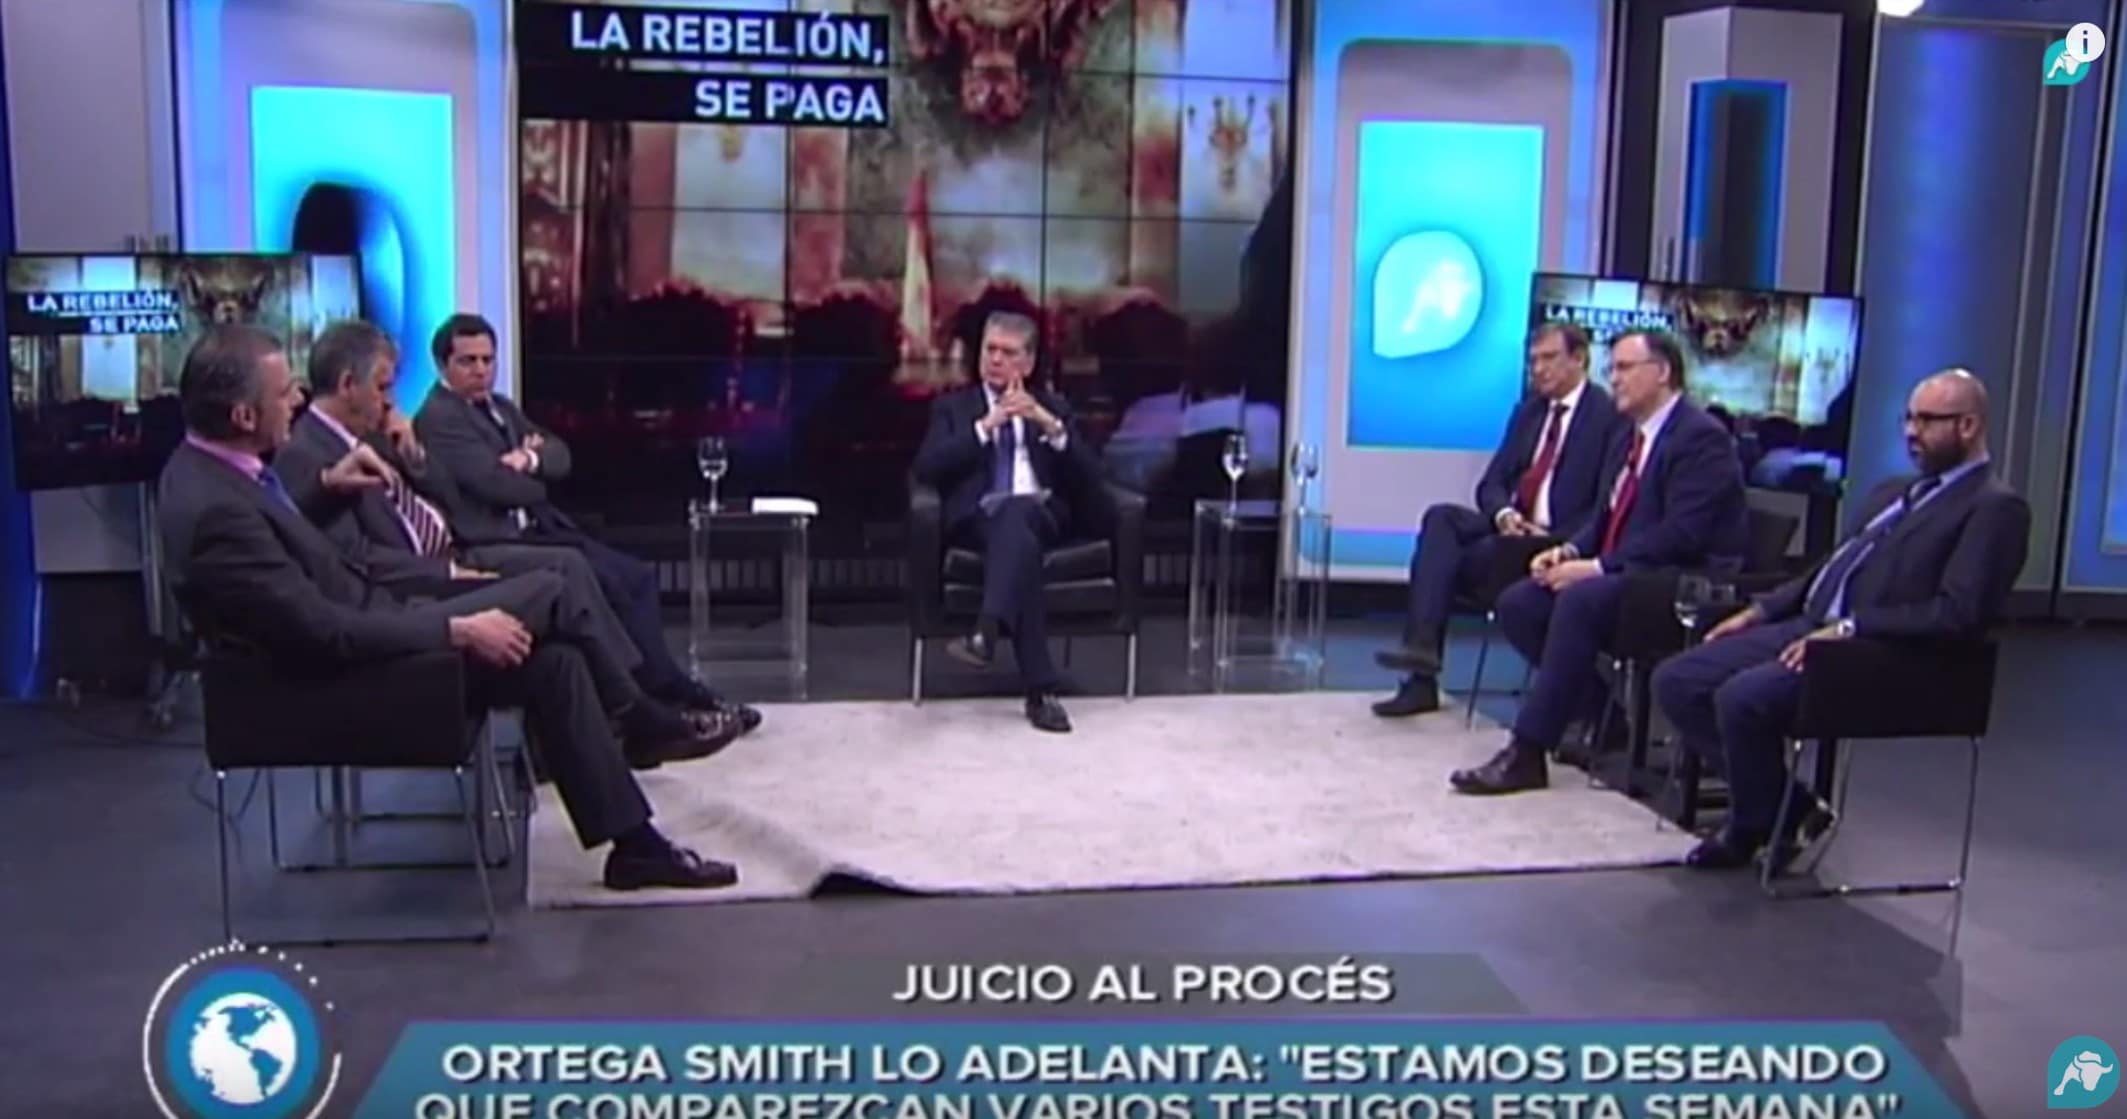 Ortega Smith desmonta el plan oculto del independentismo y desenmascara a Pujol y Mas